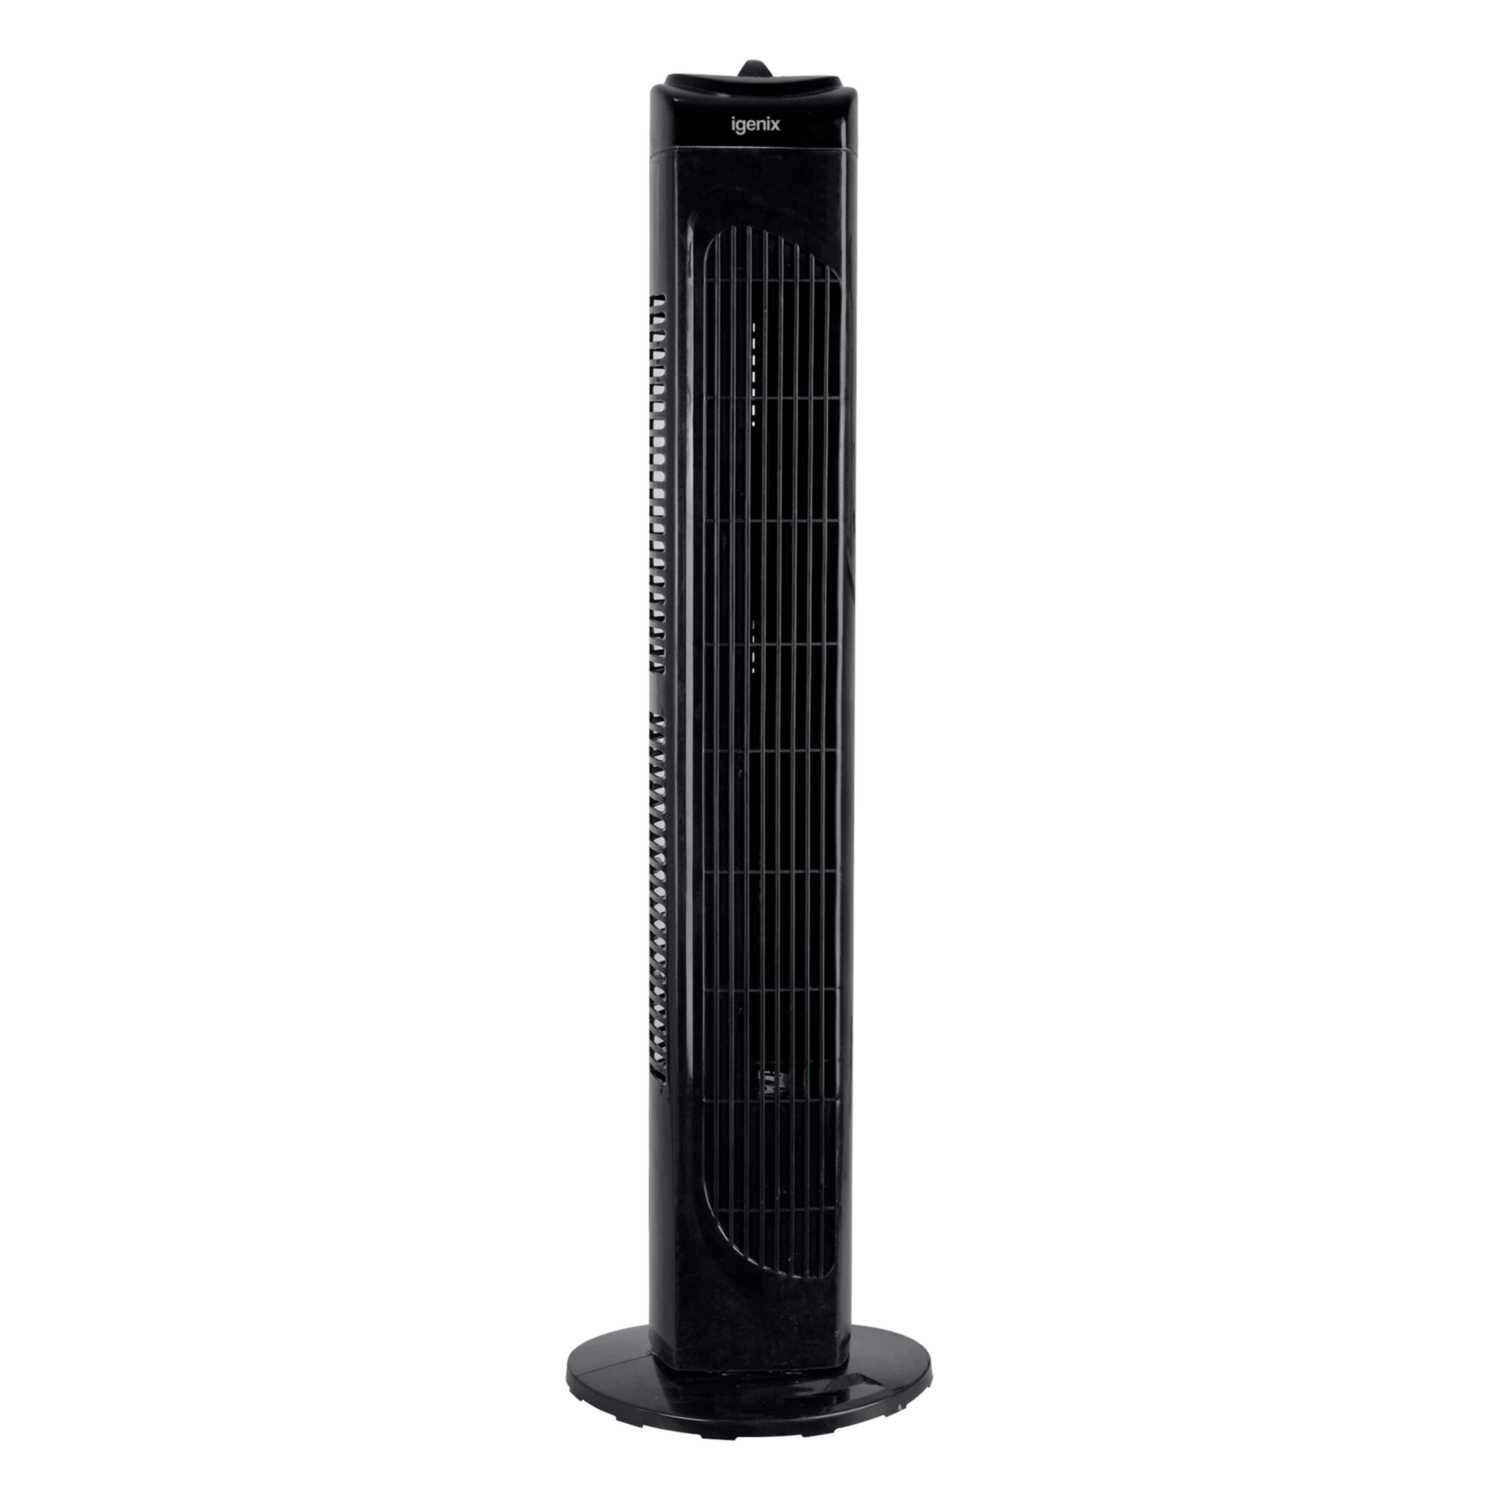 29 Inch Tower Fan - Black